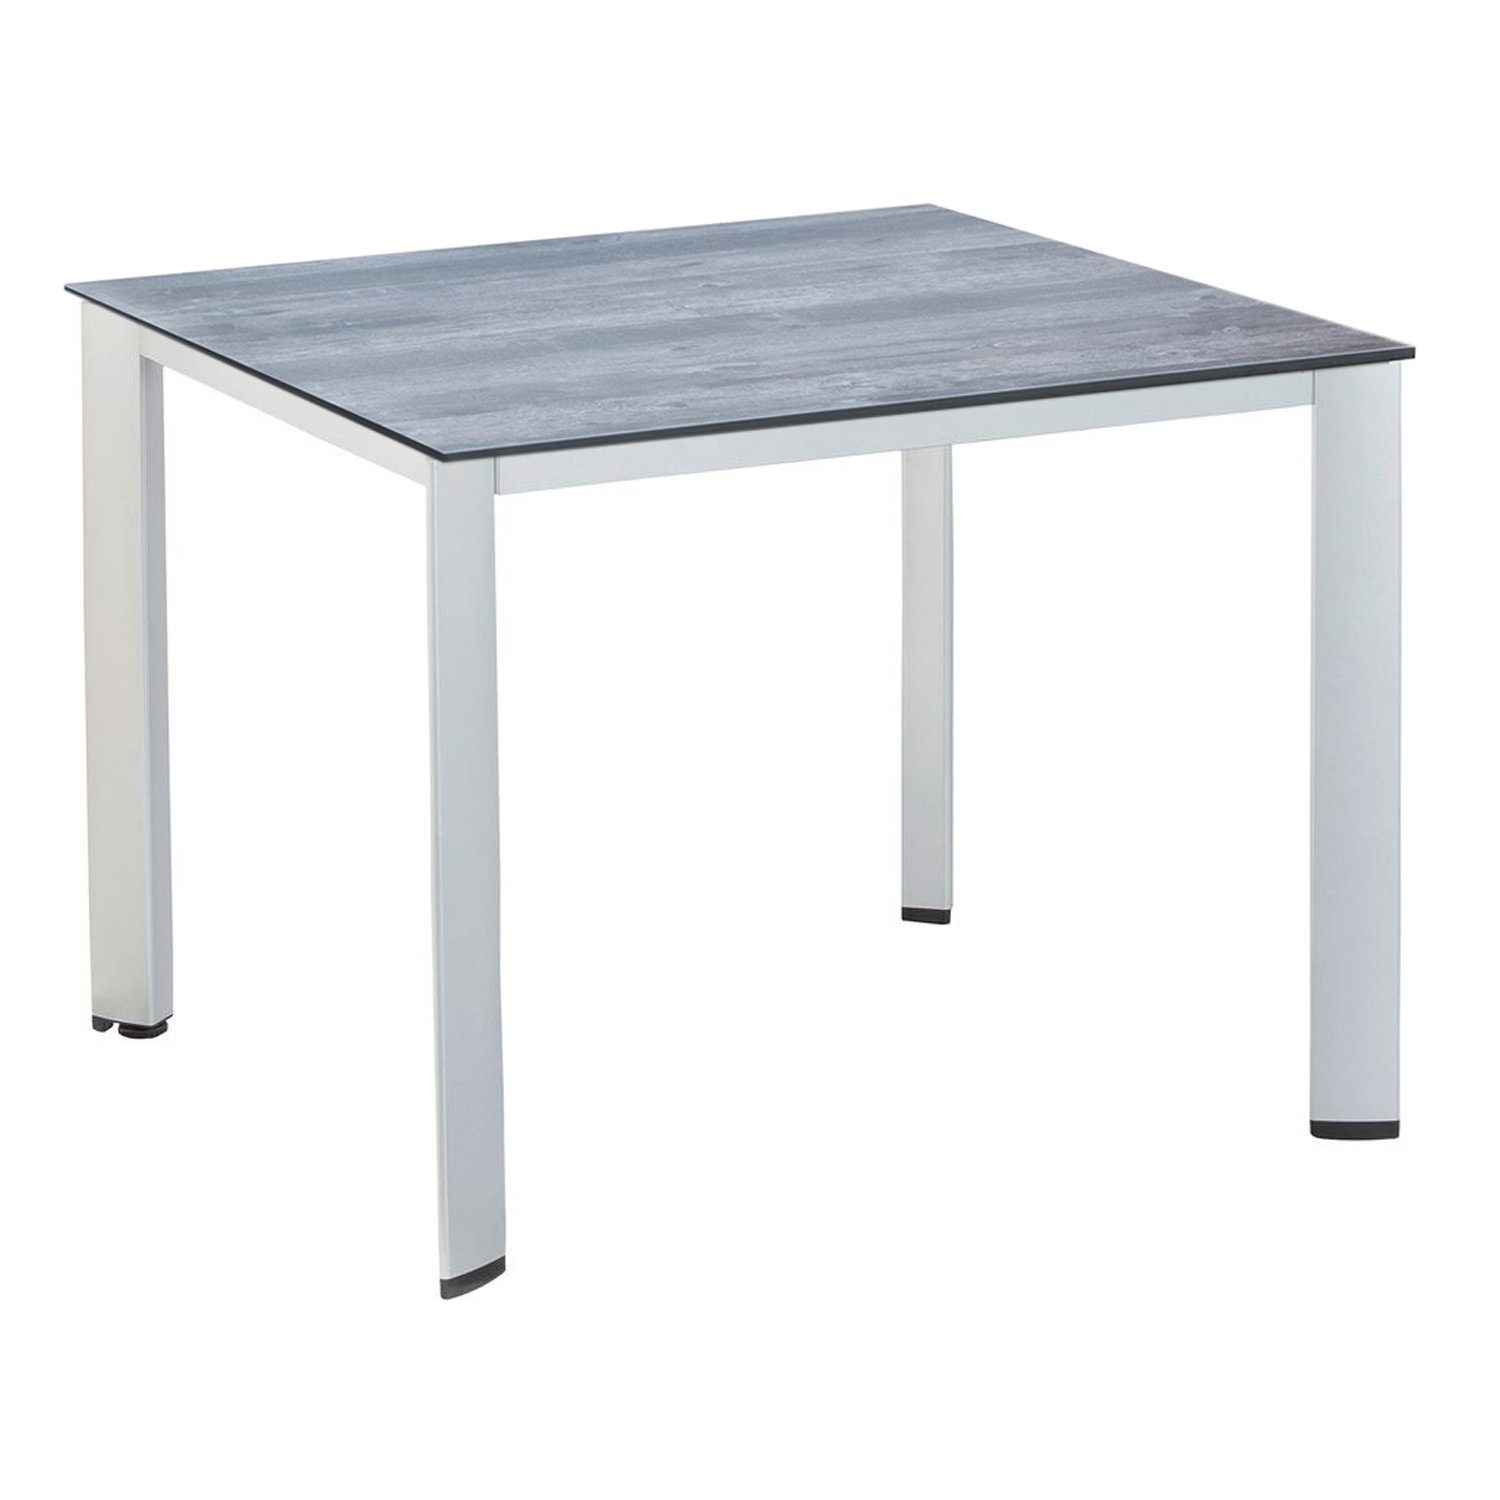 KETTLER Gartentisch Kettler EDGE Alu Gartentisch 95x95x72 cm silber mit HPL Tischplatte